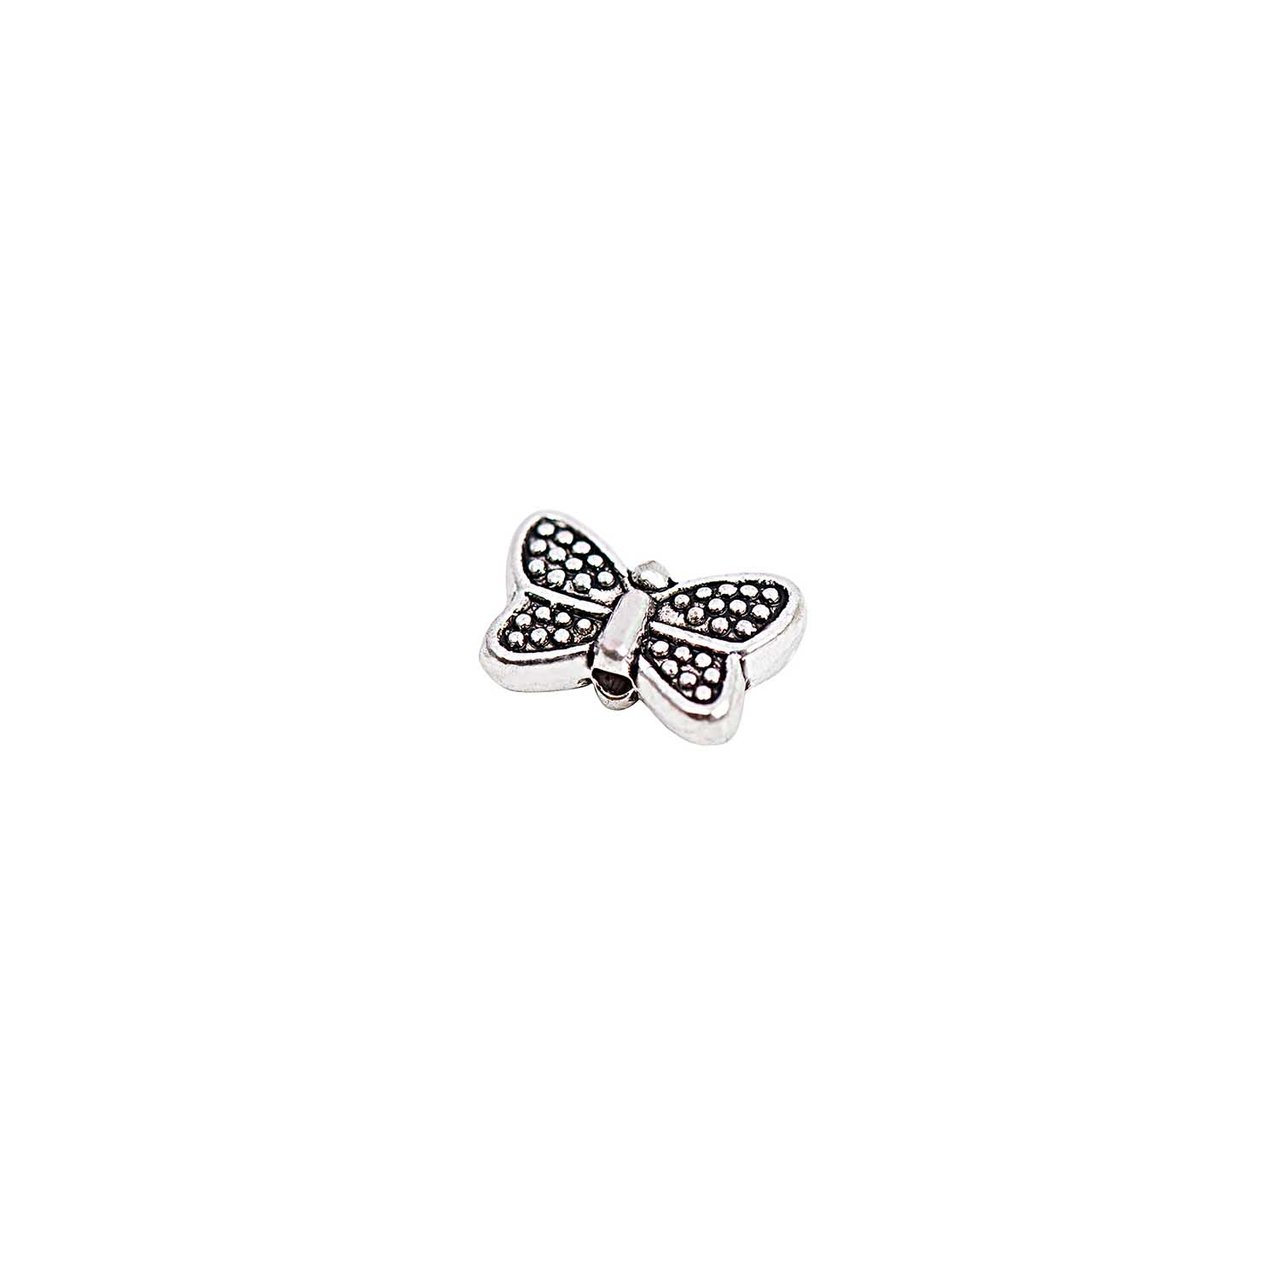 Rico Design Schmetterlinge klein silber 10x3